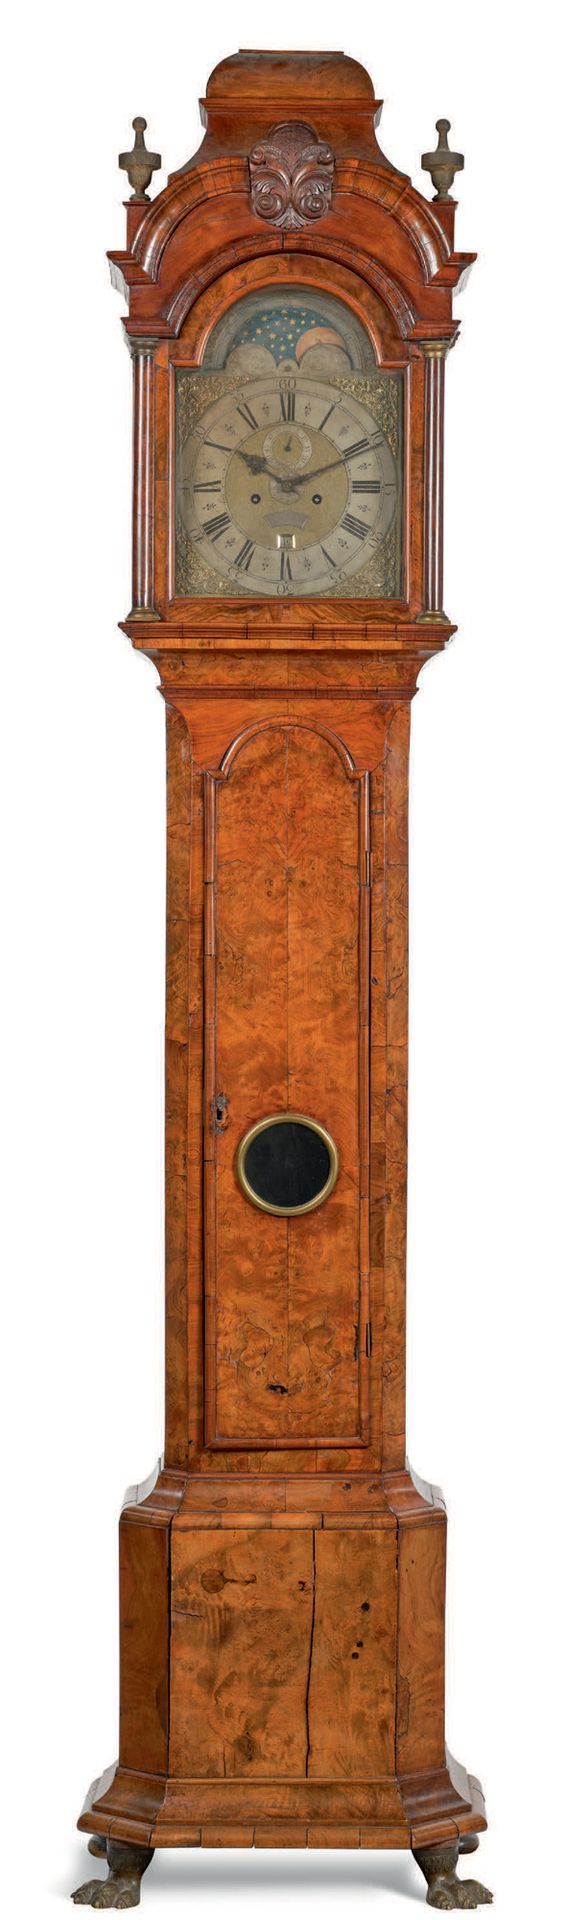 Roger DUNSTER - Début XVIIIe siècle 特殊尺寸的落地钟 
带日期和月相。胡桃木表壳，带有机芯装饰，上部有两个半圆柱形的柱子，把&hellip;